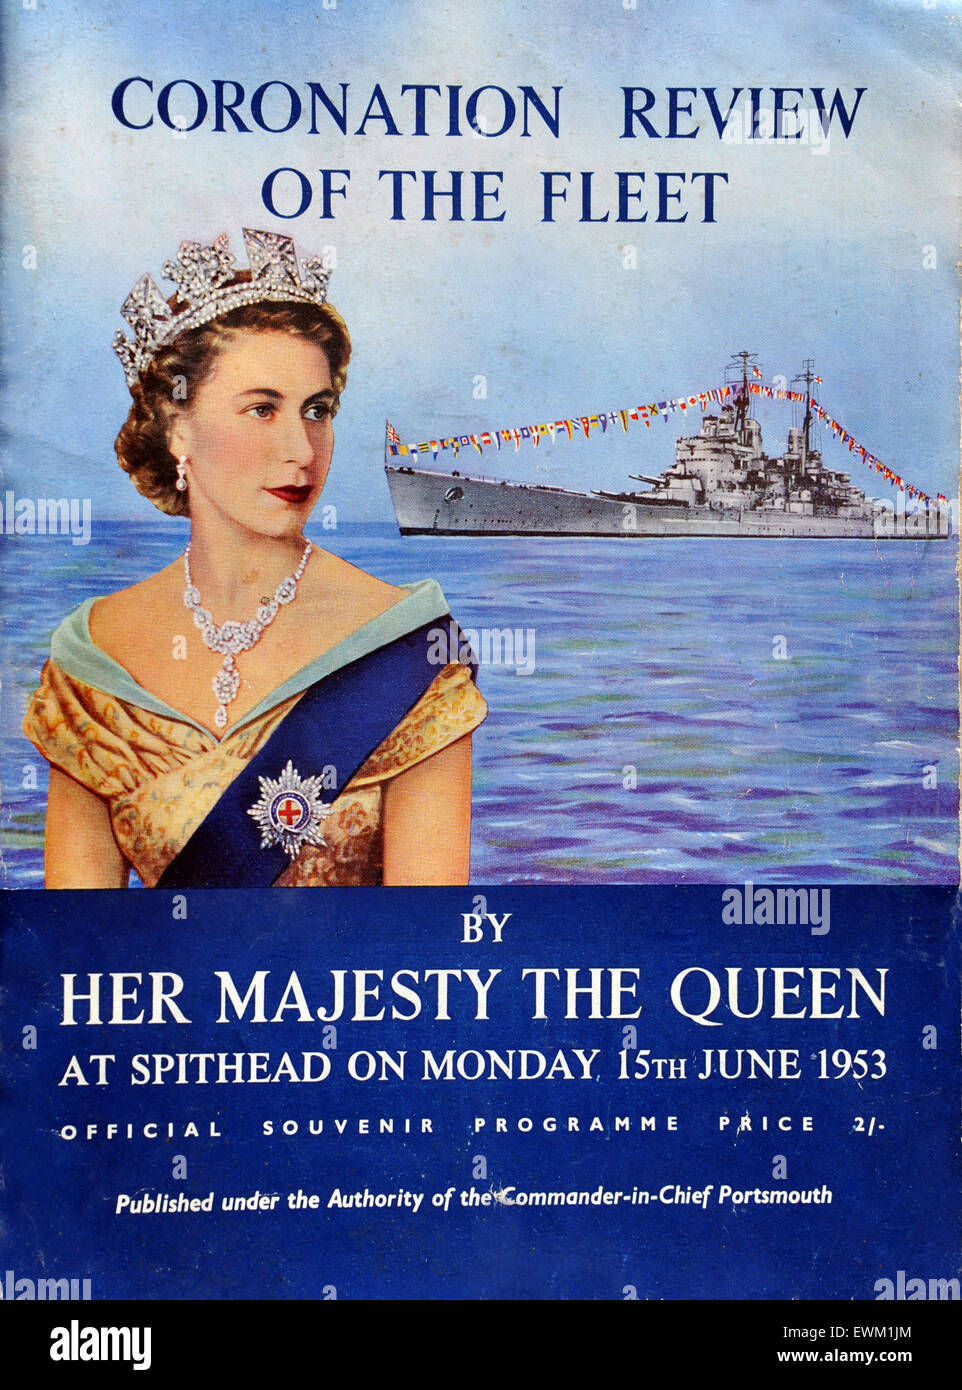 Krönung Naval Fleet Review Programm an Spithead in der Nähe von Portsmouth für Königin Elizabeth II aus dem Jahr 1953. Großbritannien. Stockfoto